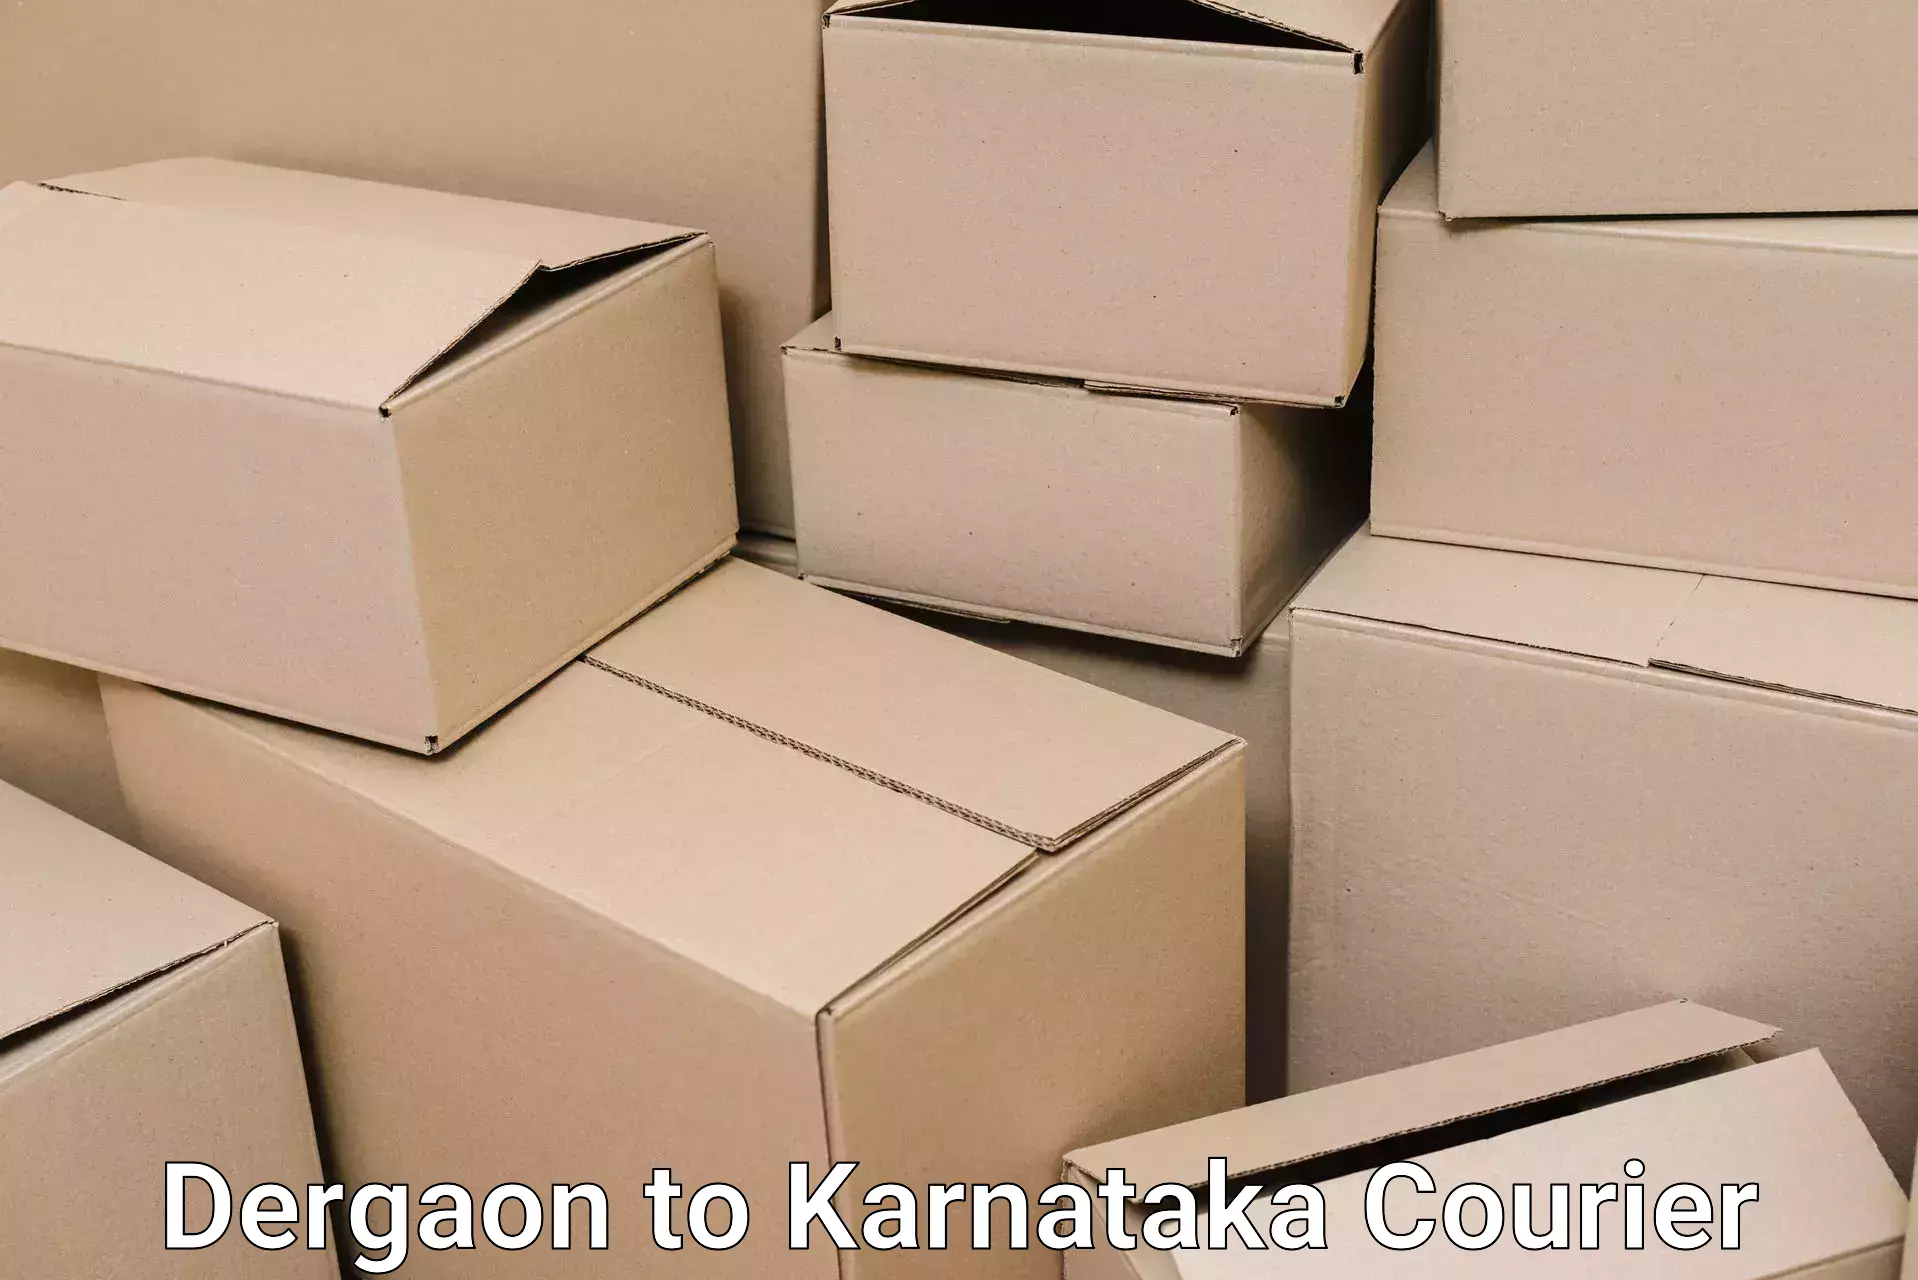 Reliable furniture transport Dergaon to Karnataka